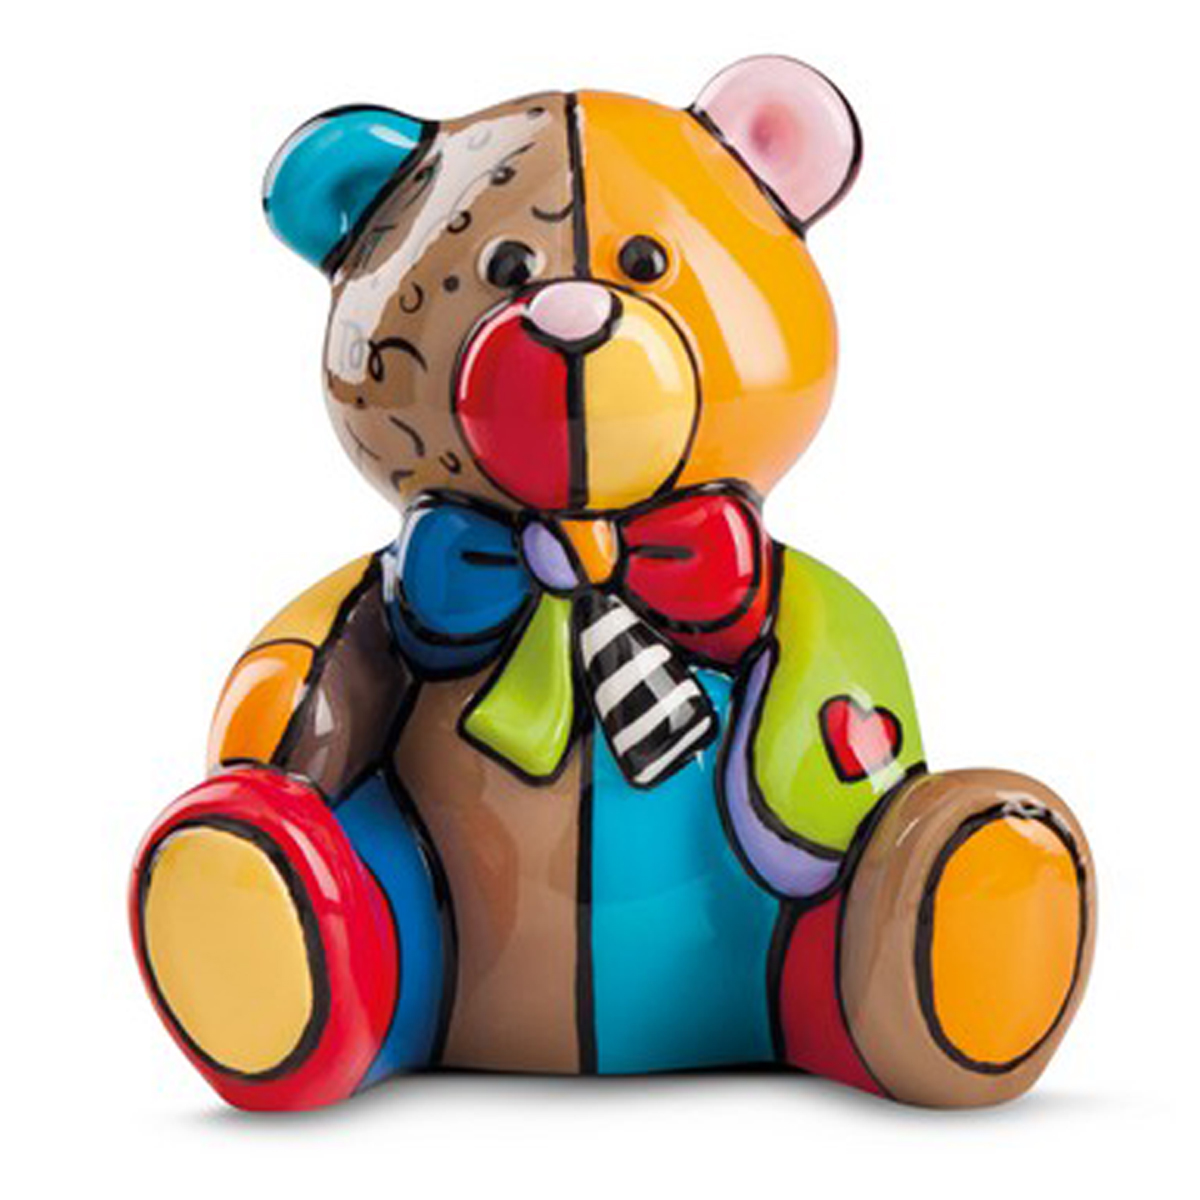 Figurine céramique \'Teddy\' multicolore (Britto) - 8x7 cm - [R6878]